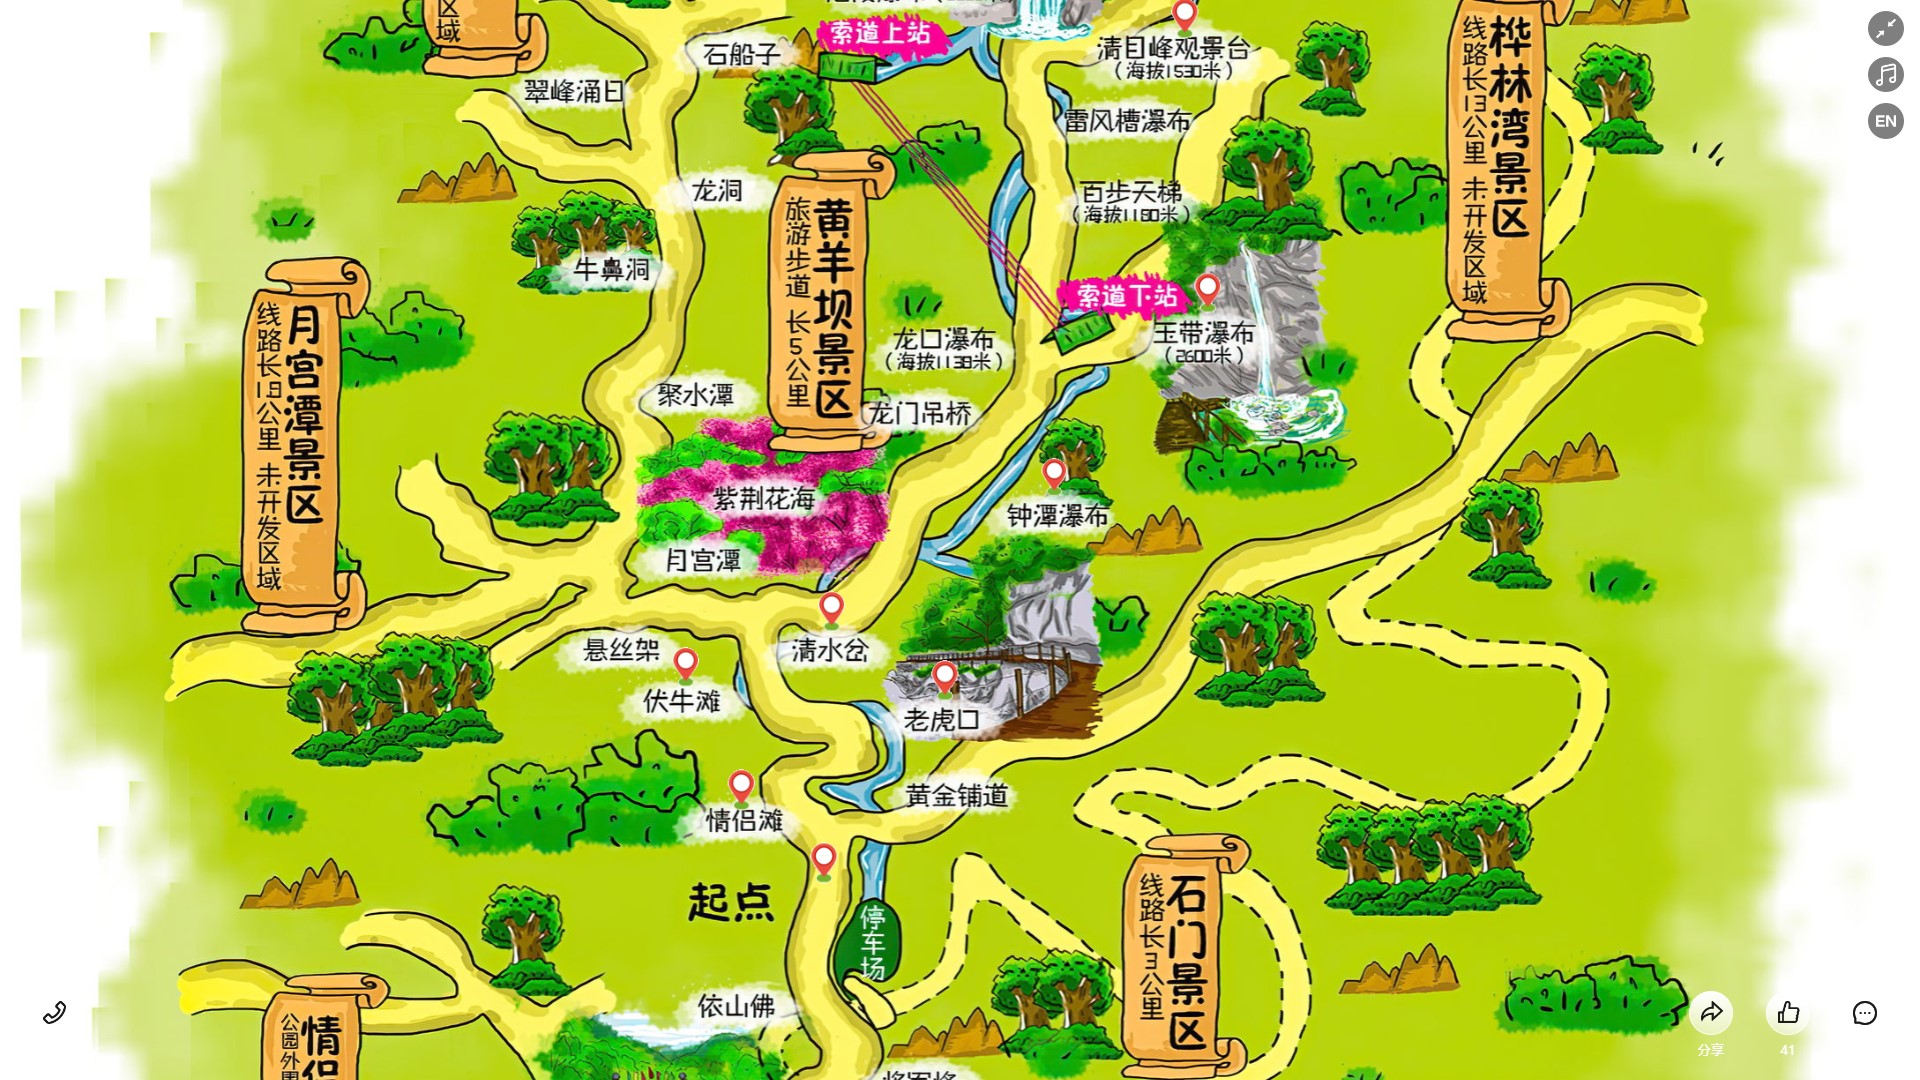 和田市景区导览系统